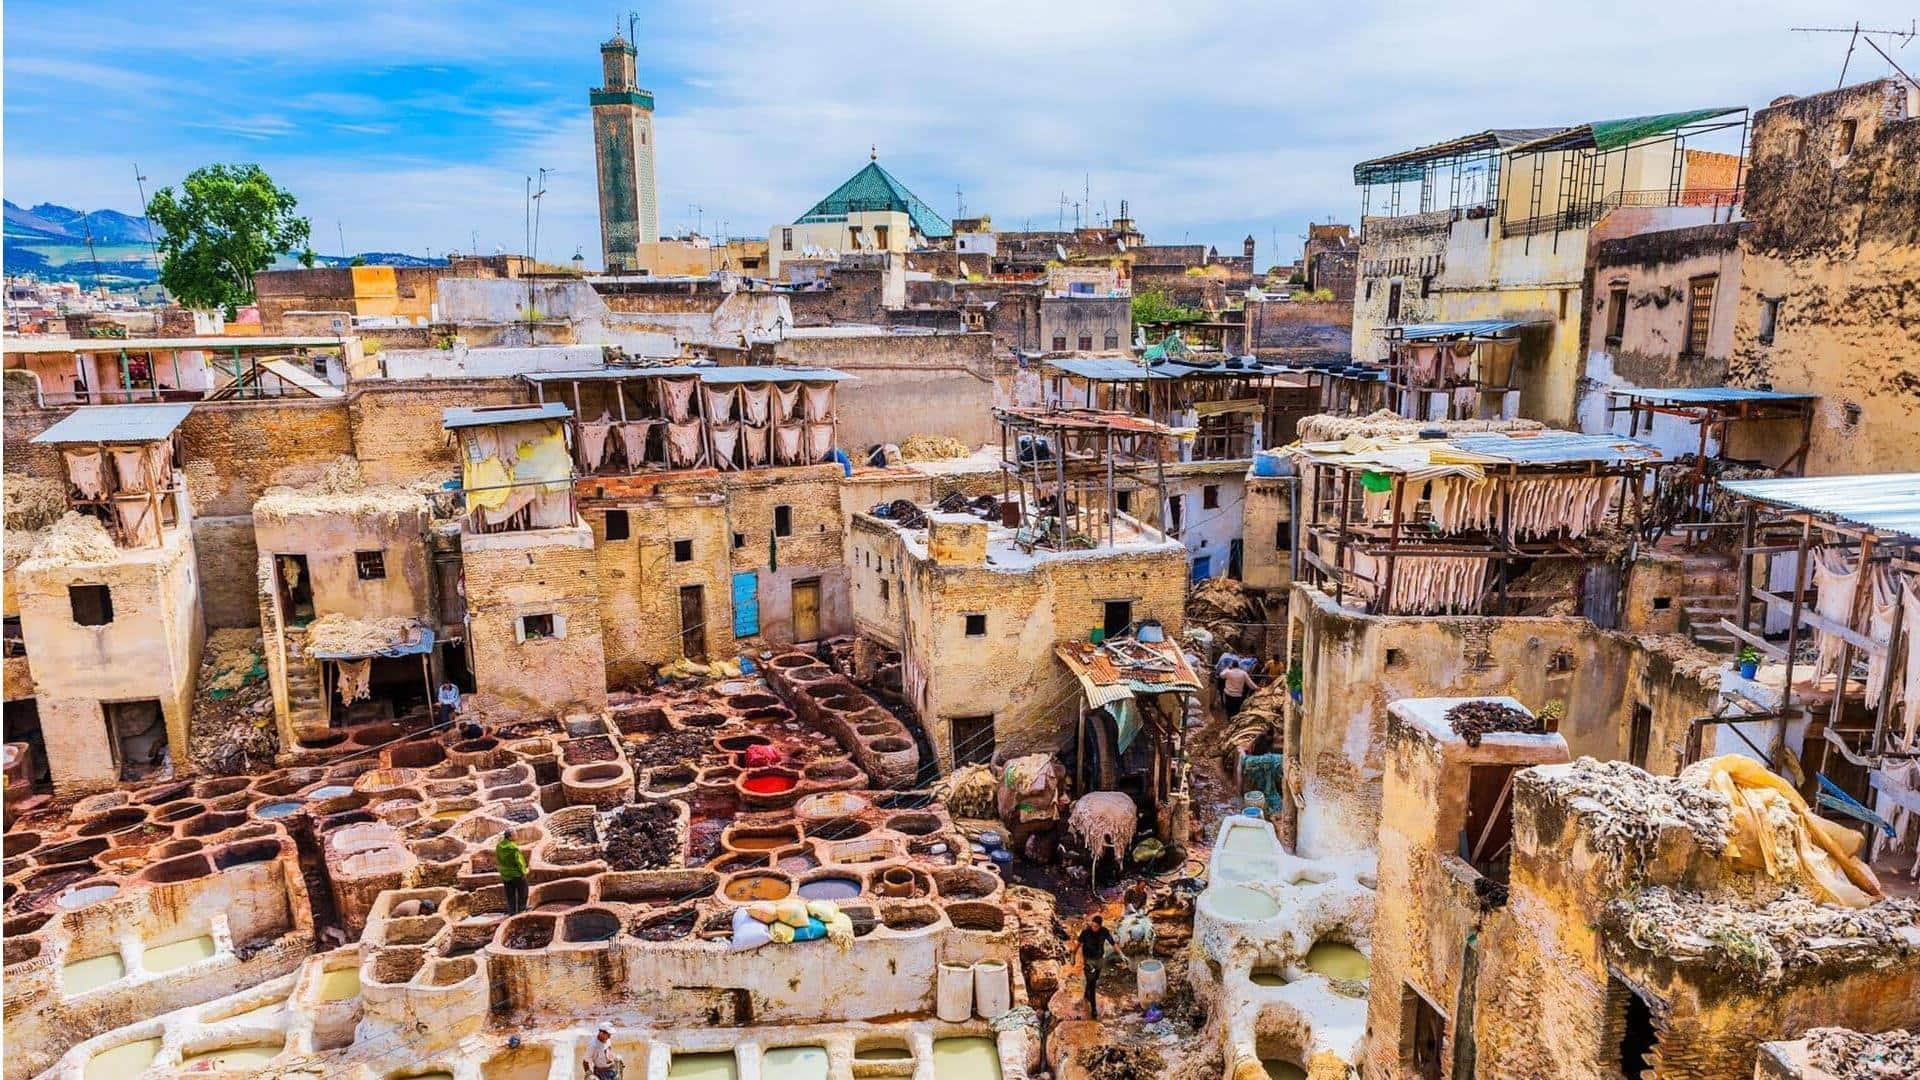 Panduan menjelajahi fez pusat budaya Maroko